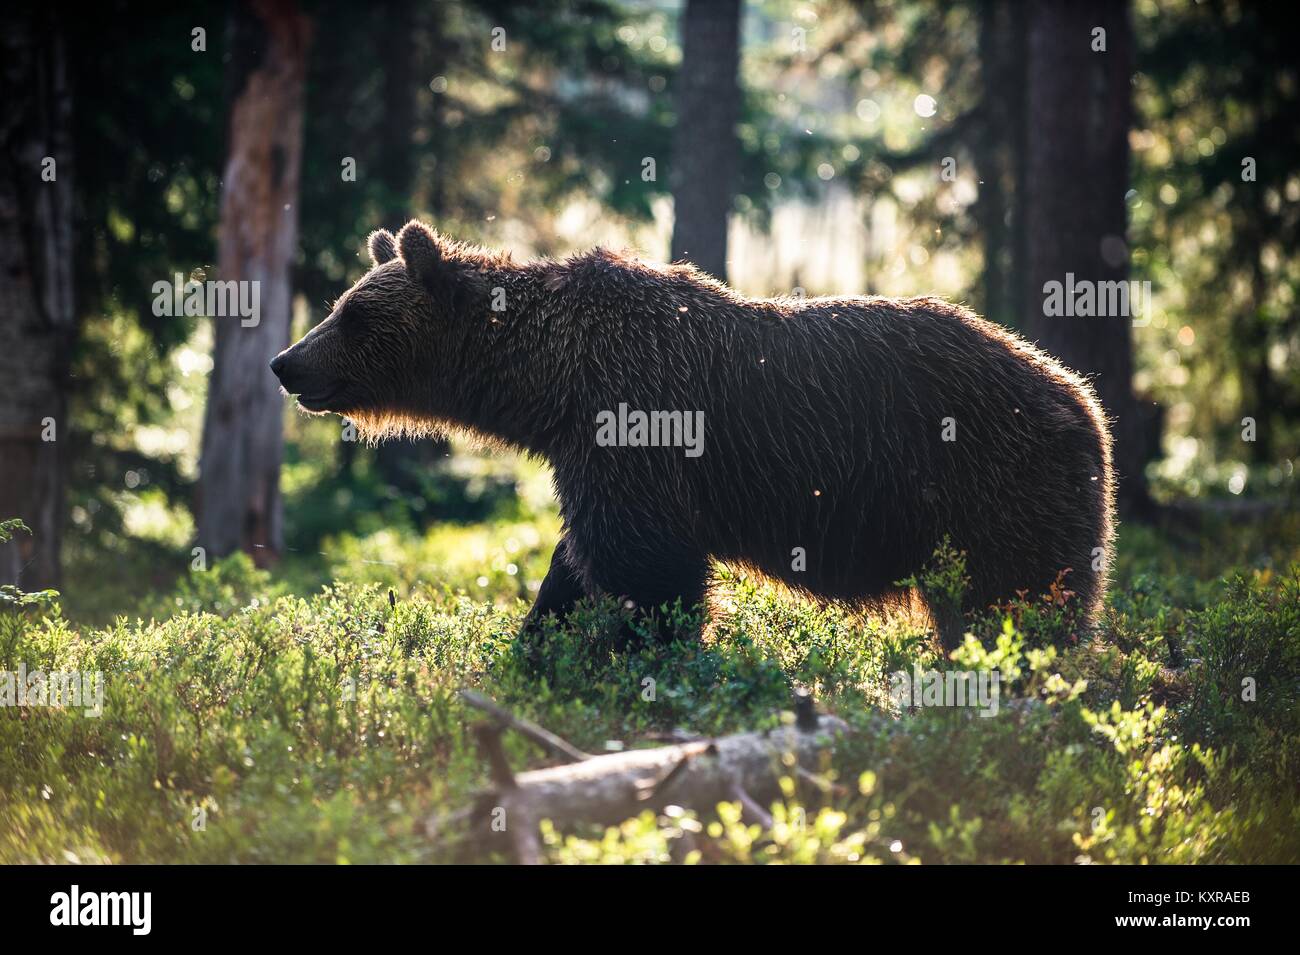 Wild brown bear (Ursus arctos arctos) dans la forêt de l'été. Fond vert naturel Banque D'Images